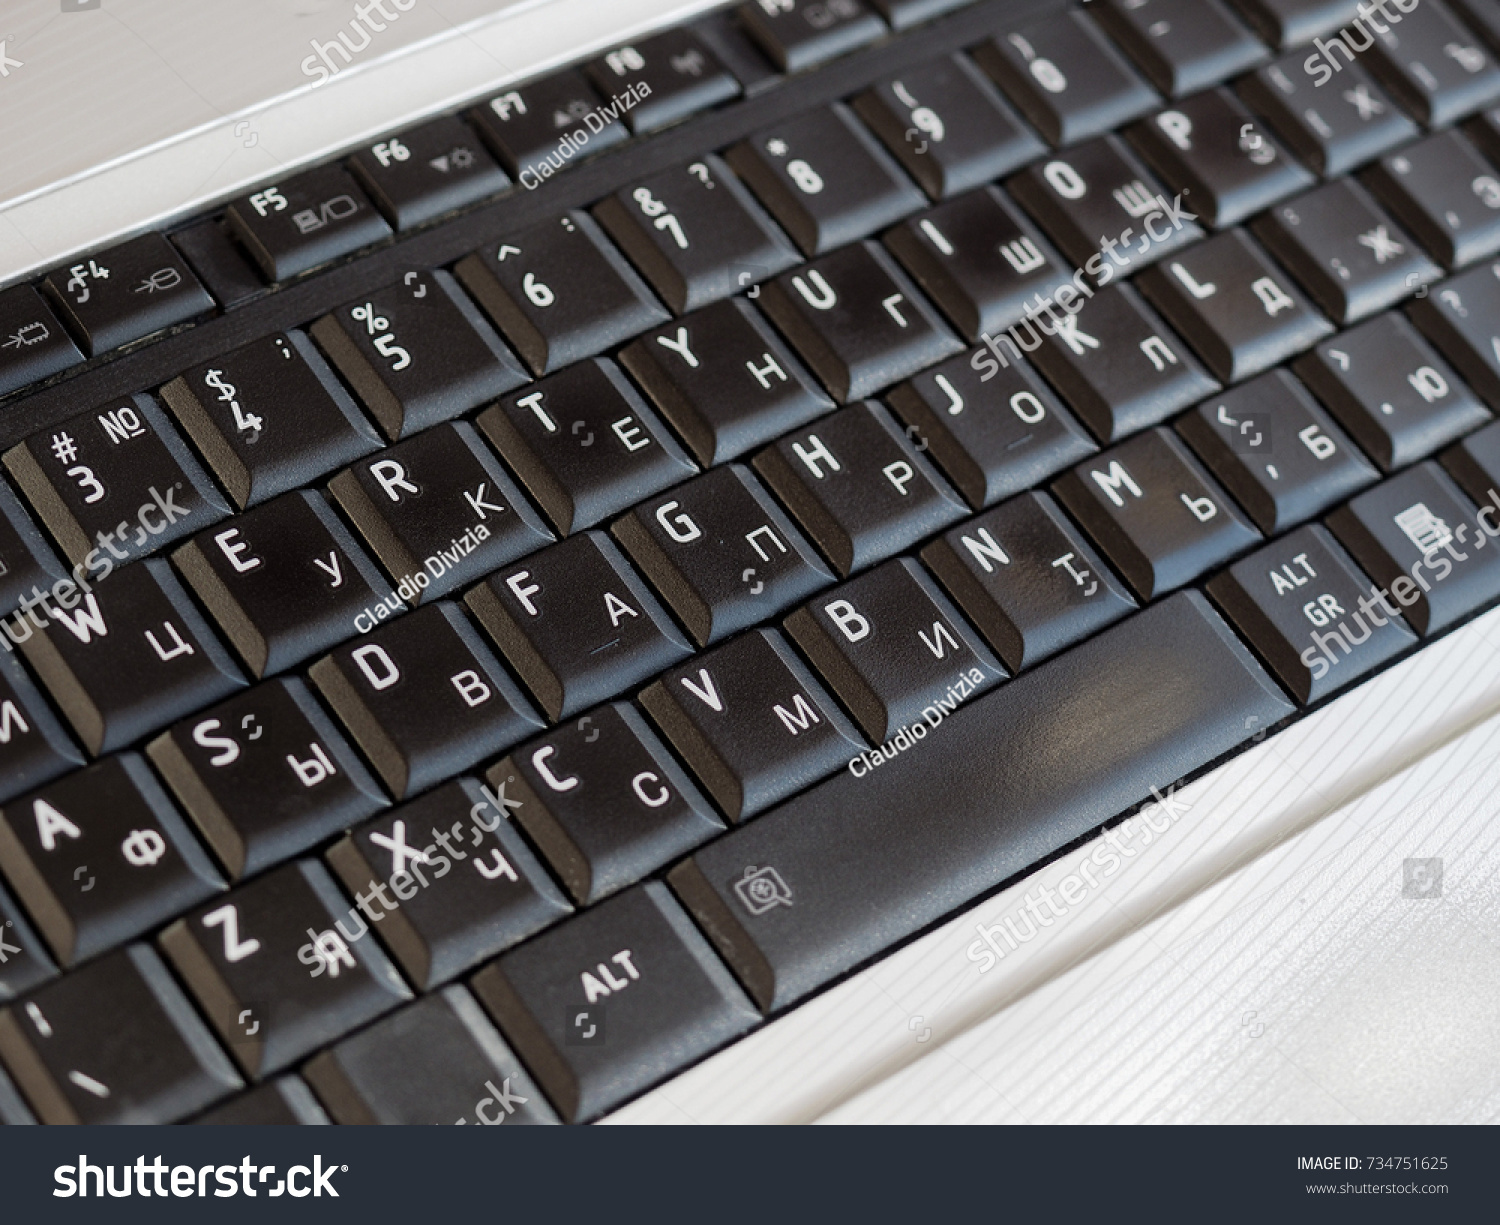 Русская клавиатура скачать бесплатно на компьютер